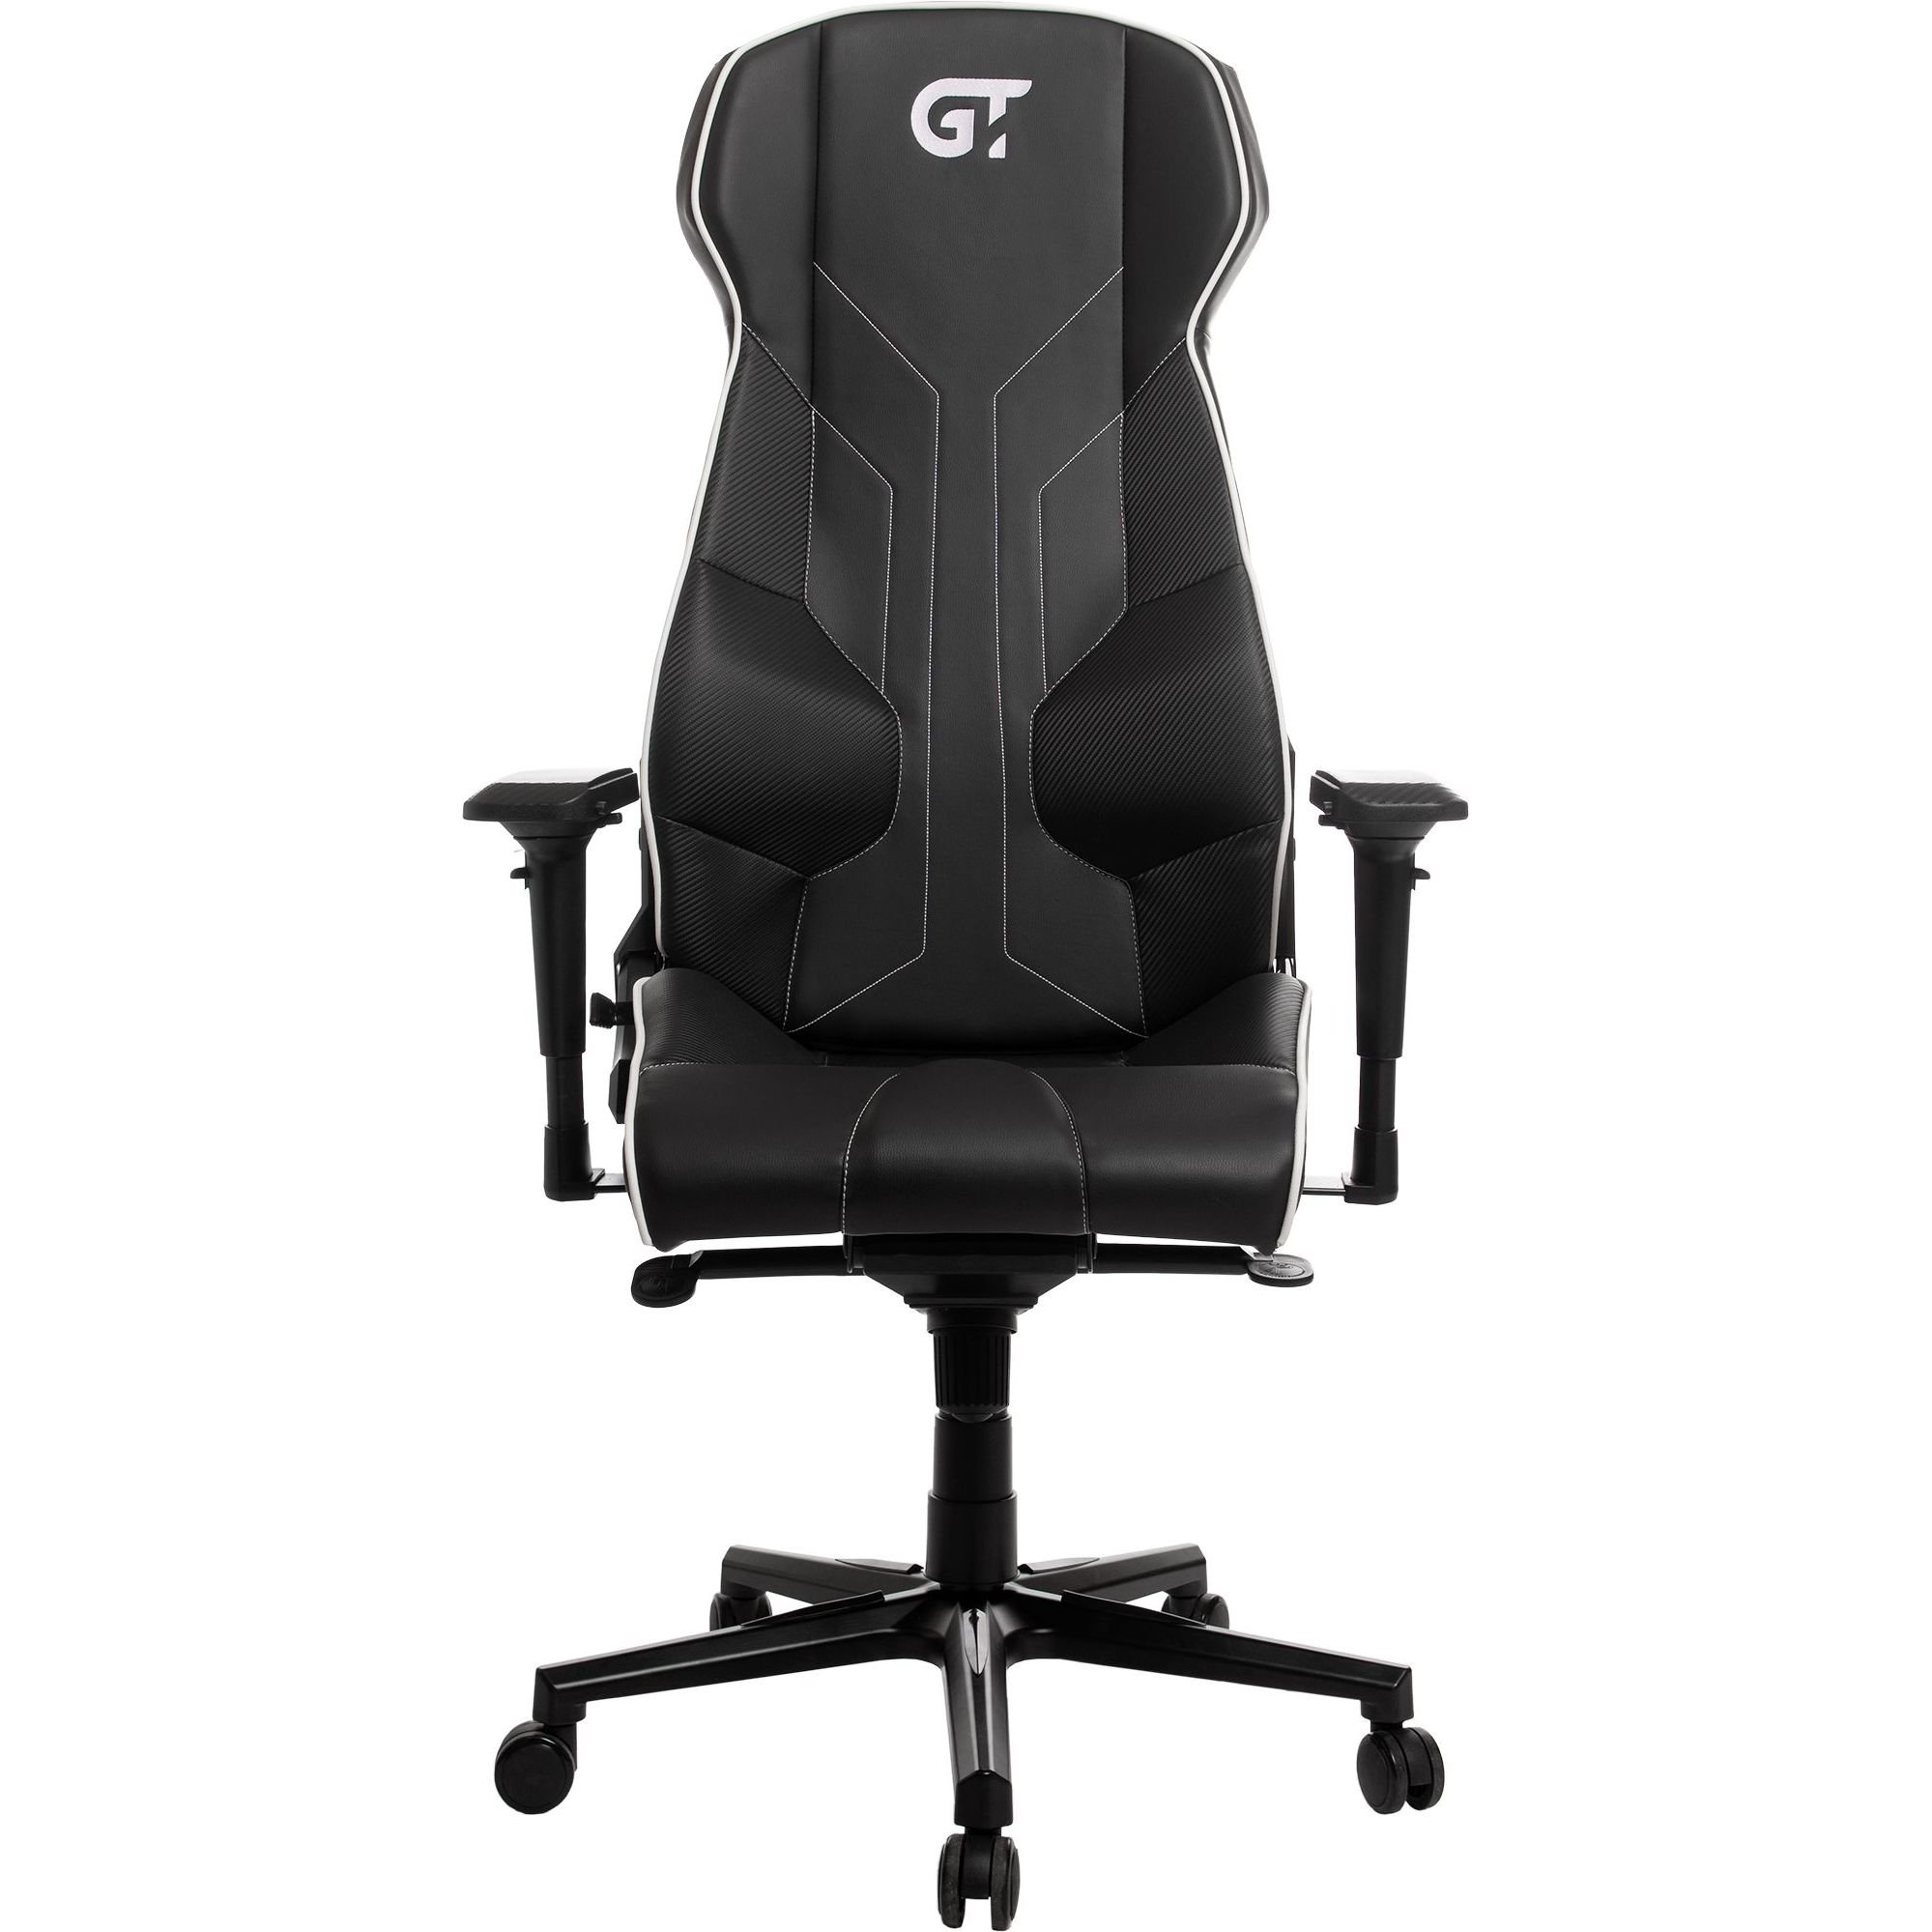 Геймерское кресло GT Racer черное с белым (X-8007 Black/White) - фото 1